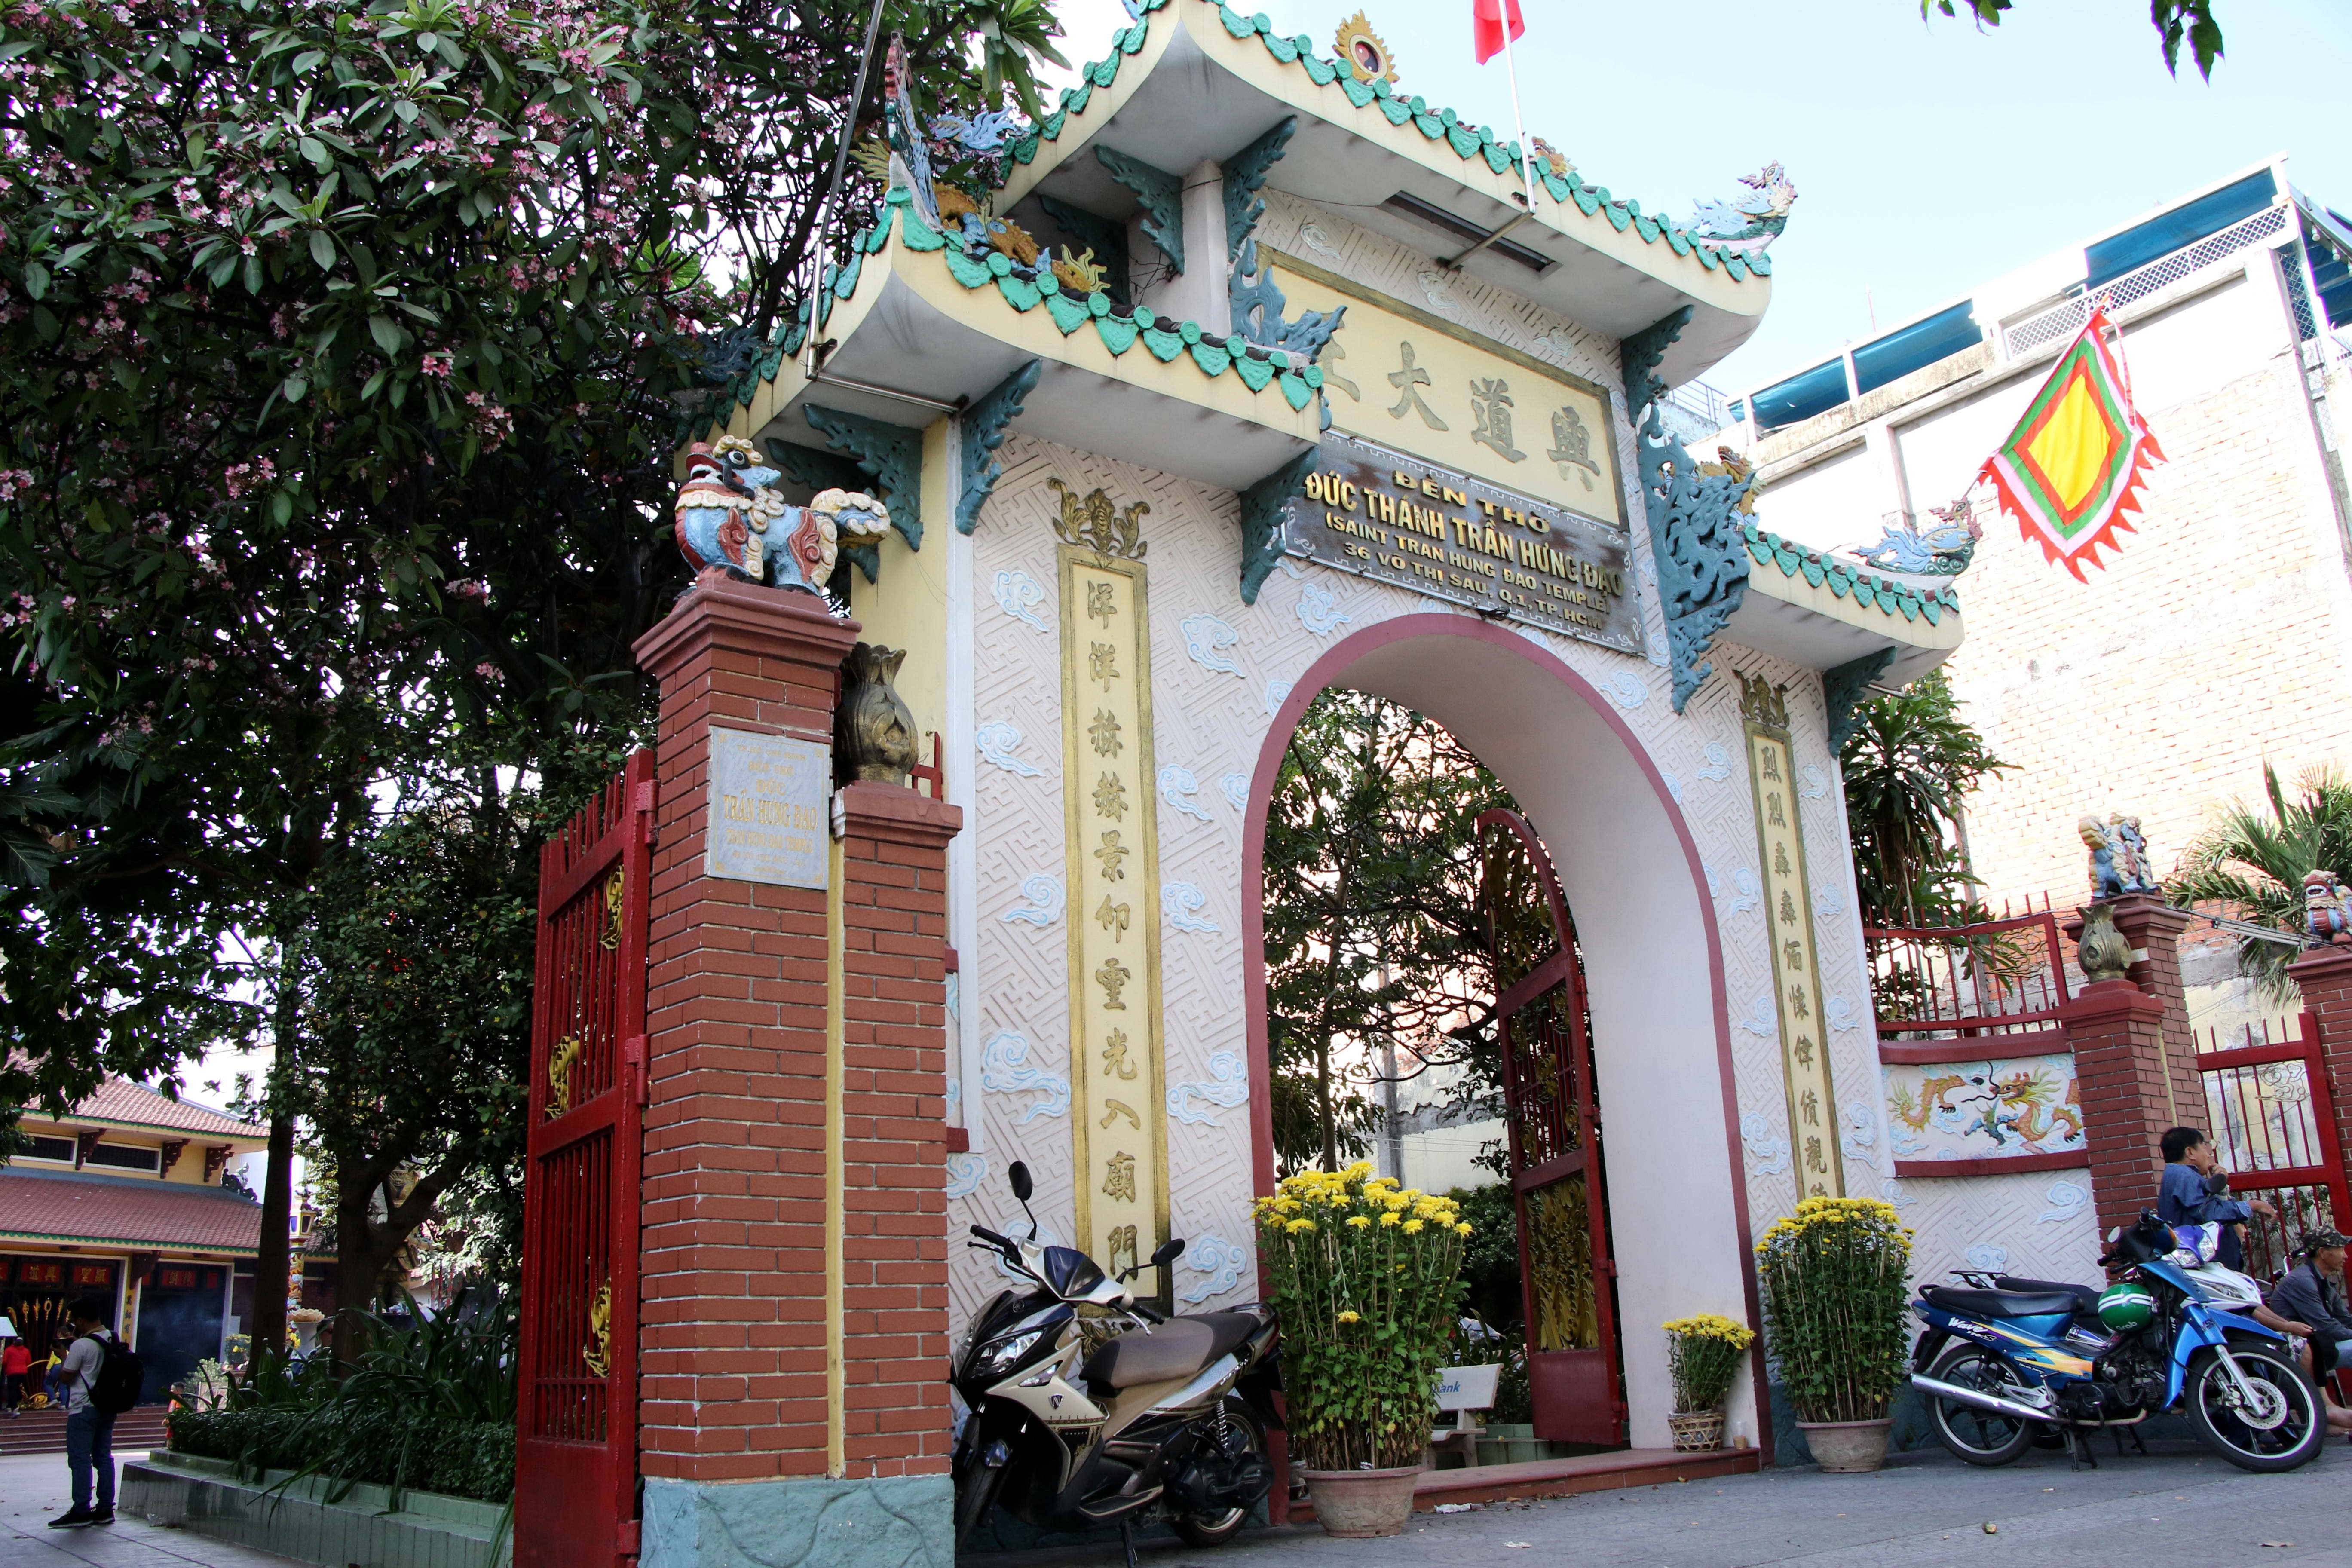 Hiện ở Q.1, ngoài tượng Đức thánh Trần Hưng Đạo nằm ở Công trường Mê Linh còn có Đền thờ Đức thánh Trần Hưng Đạo ở số 36 Võ Thị Sáu (P.Tân Định) 